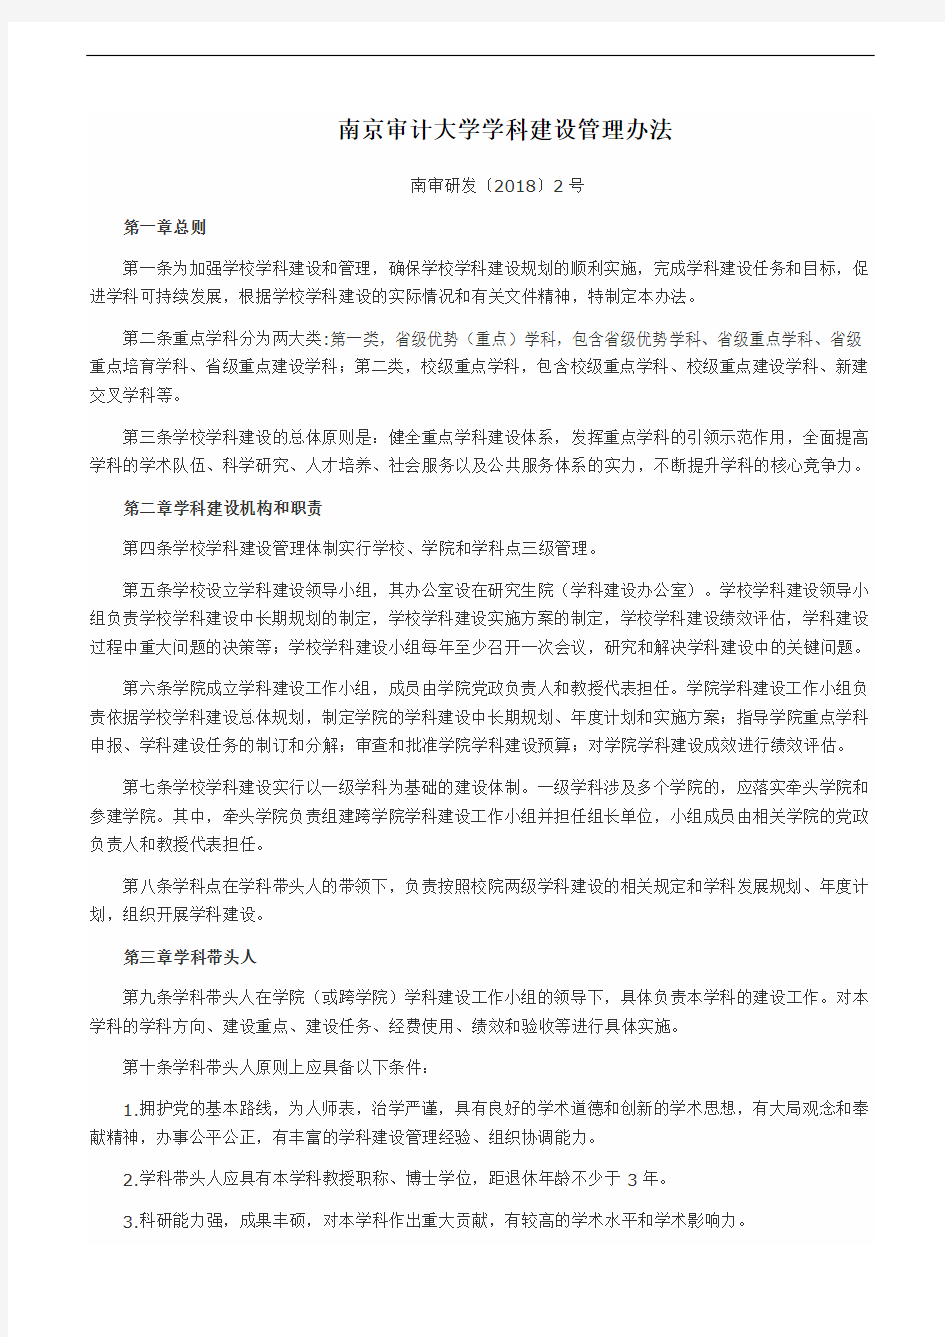 南京审计大学学科建设管理办法